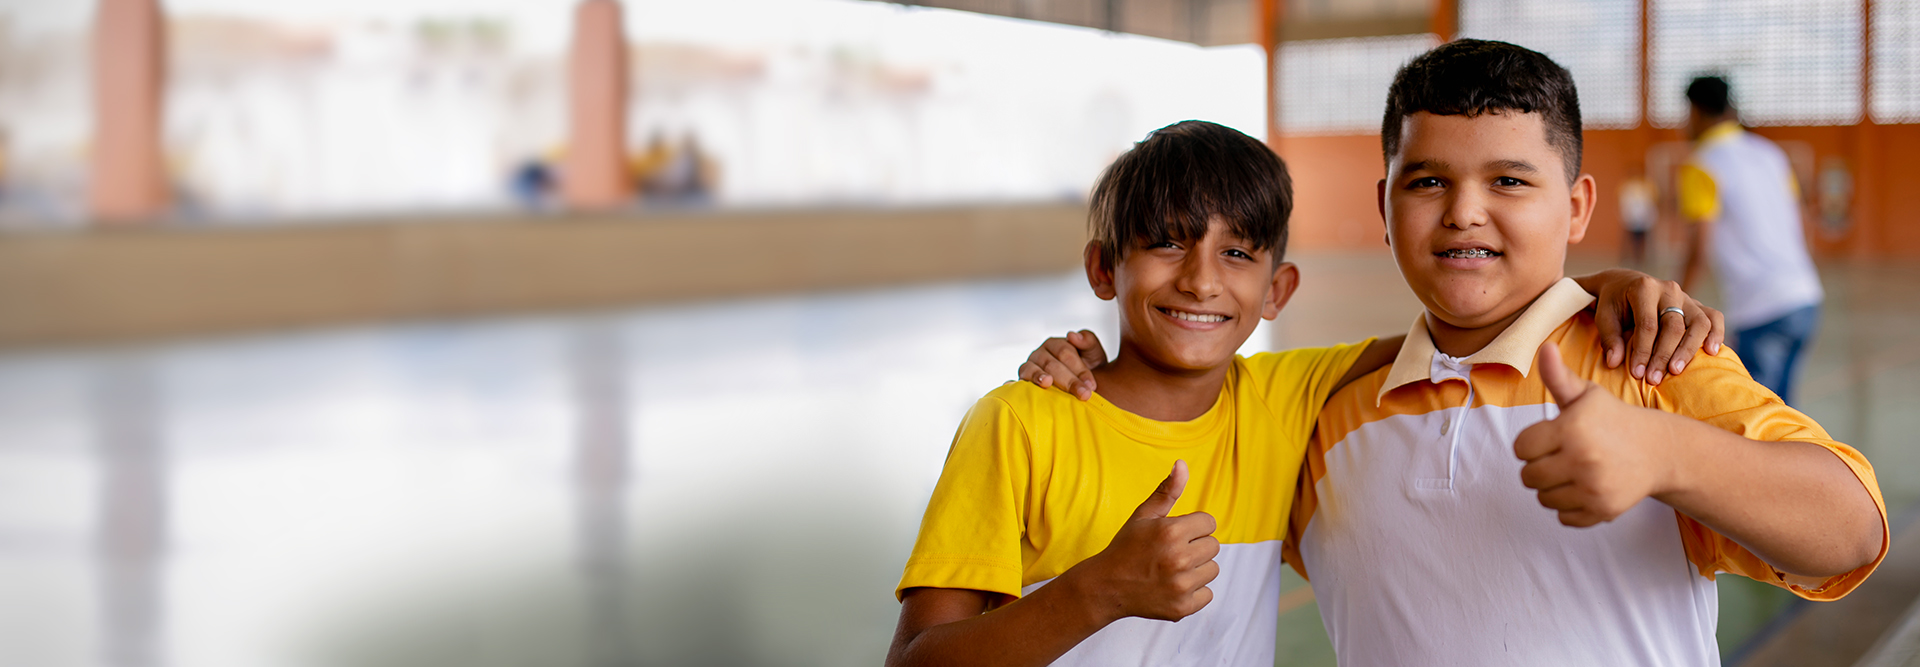 Dois meninos fazendo sinal de positivo em um ginásio, incentivando os espectadores a doarem para a educação.